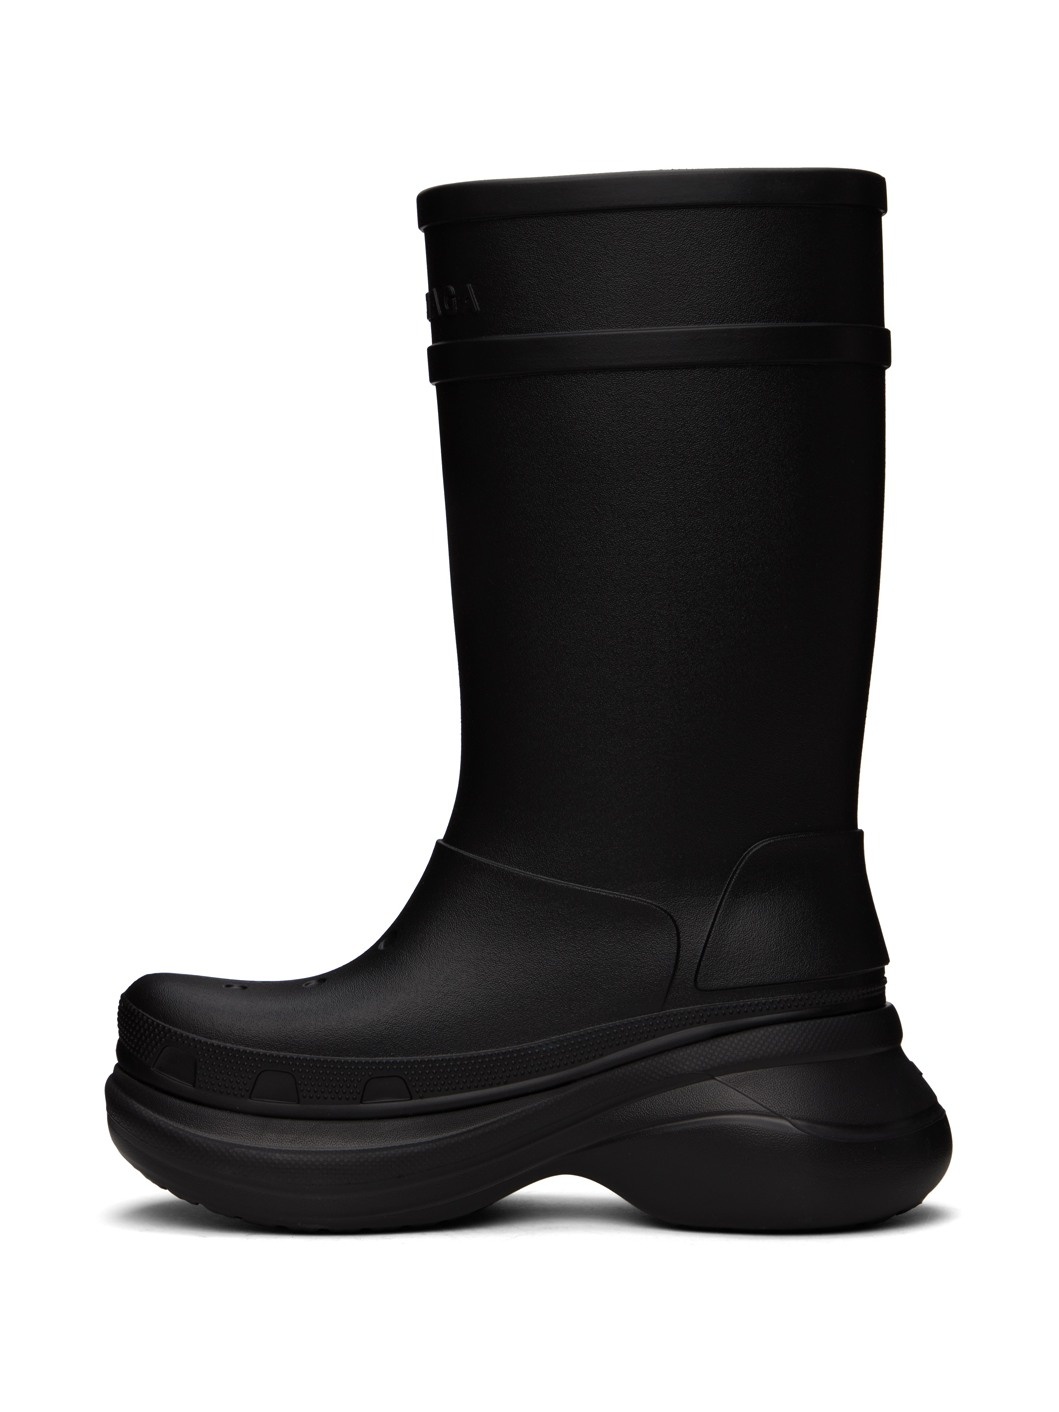 Black Crocs Edition Boots - 3